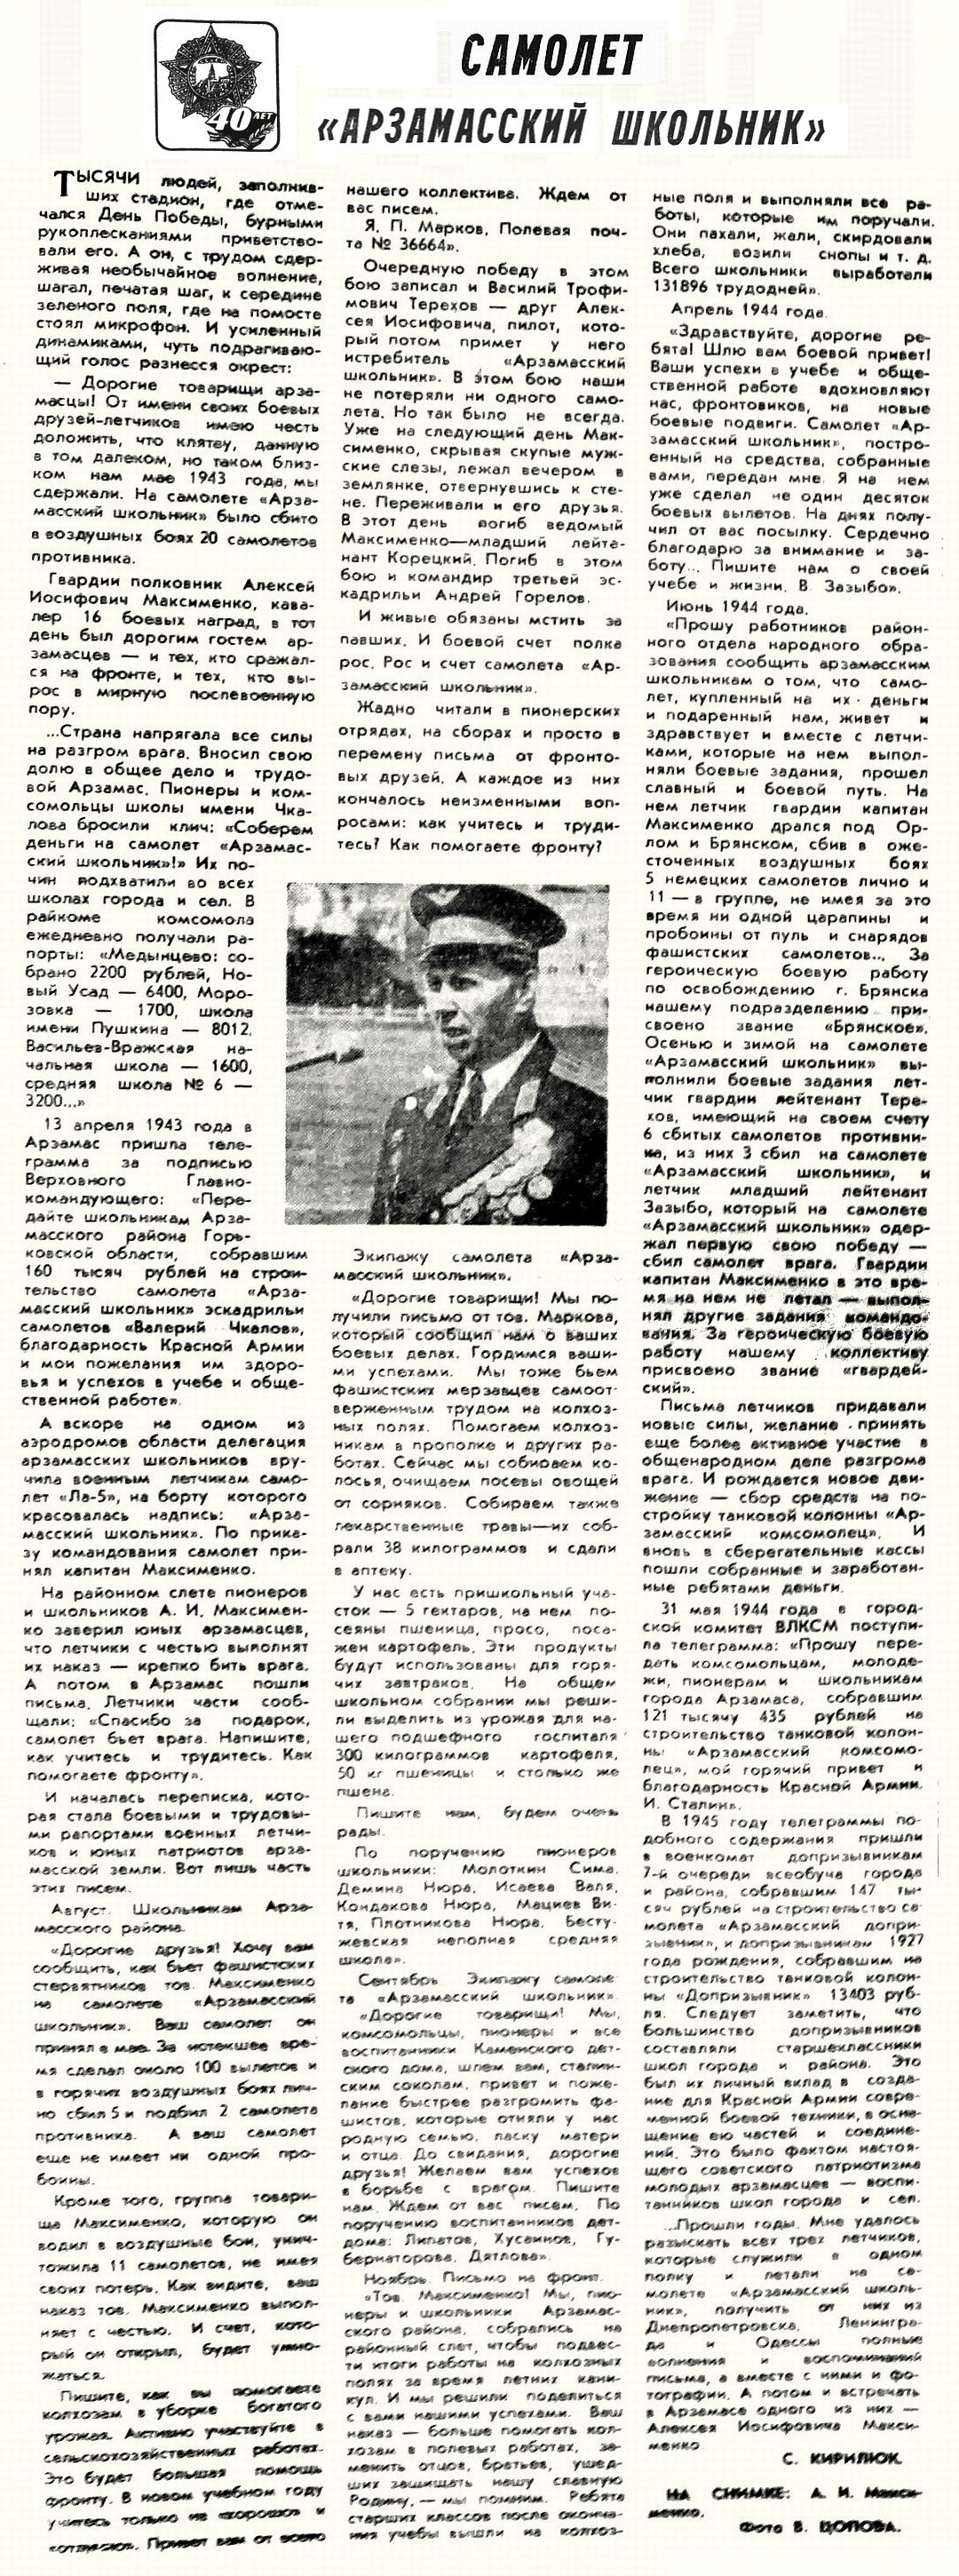 Из материалов послевоенных лет о А. И. Максименко